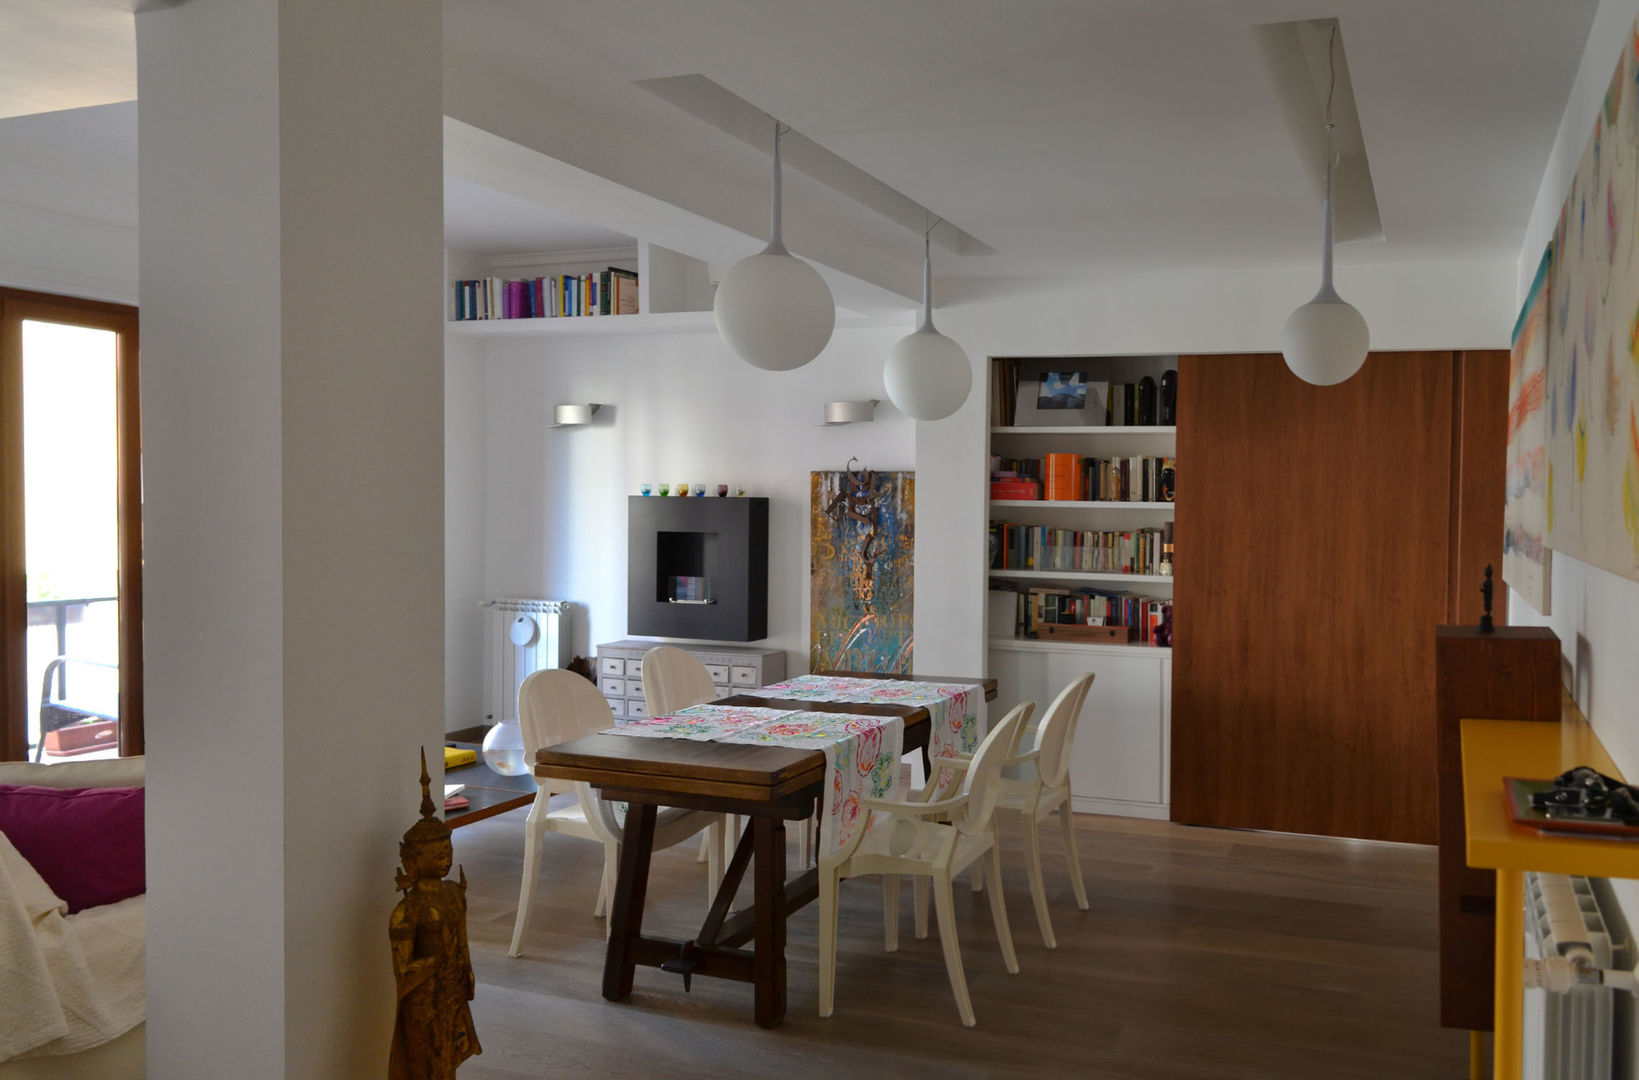 the livingroom arch. Paolo Pambianchi Livings de estilo minimalista Muebles de televisión y dispositivos electrónicos